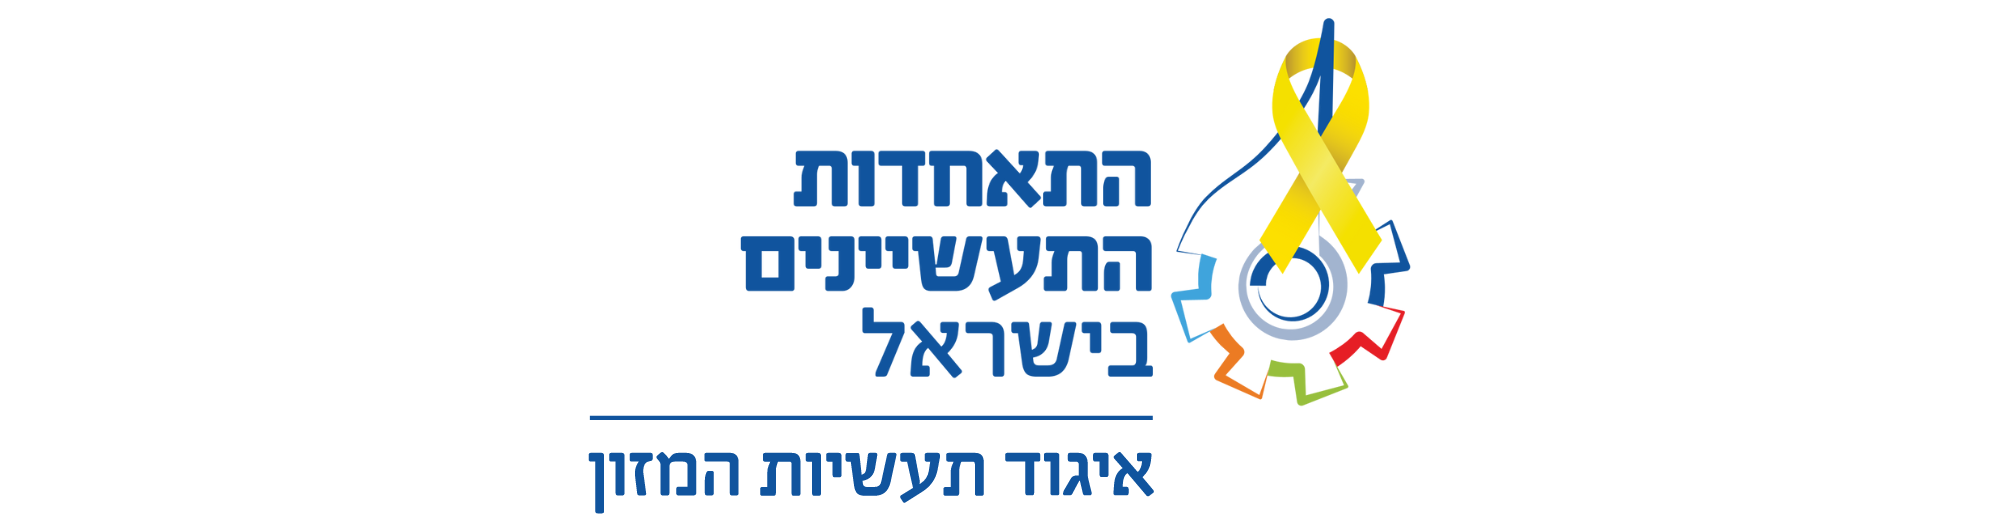 איגוד התעשיינים בישראל - איגוד המזון